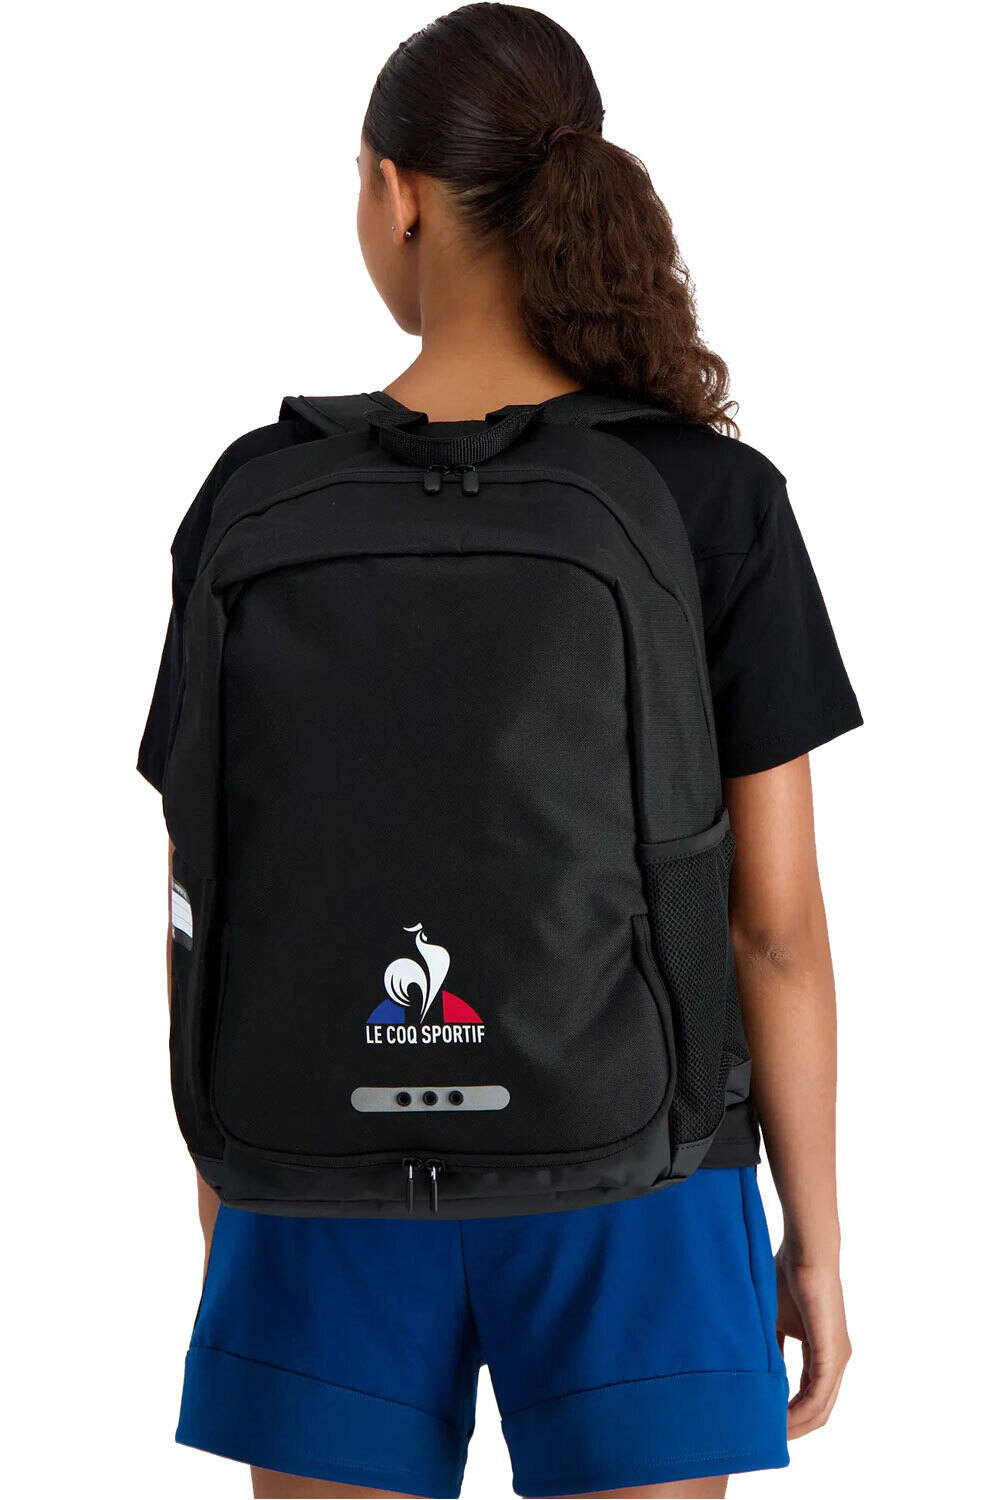 Le Coq Sportif mochila deporte N3 TRAINING Backpack vista frontal